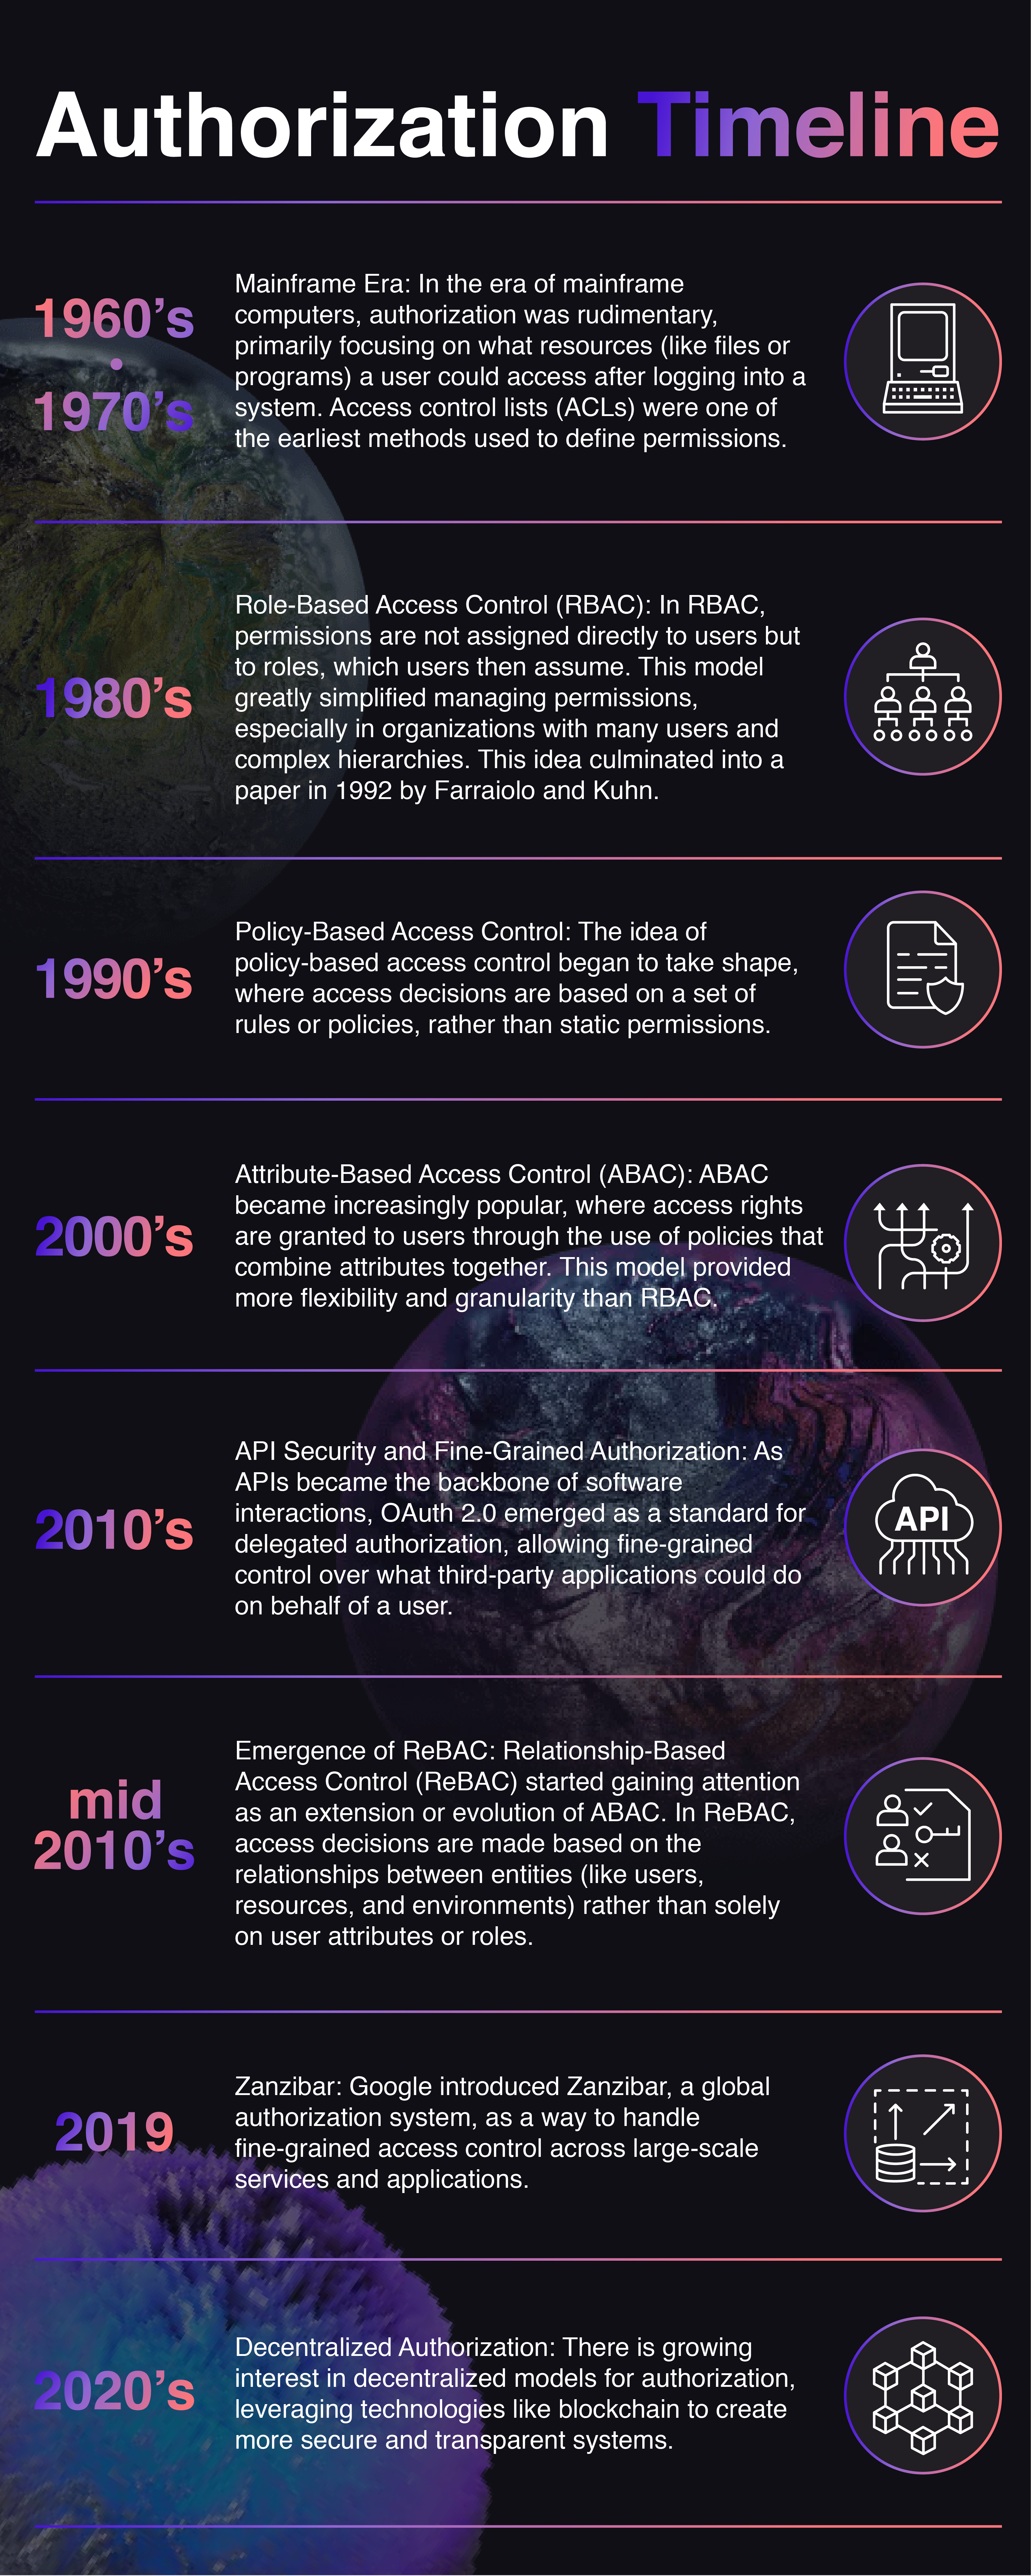 Timeline of Authorization milestones